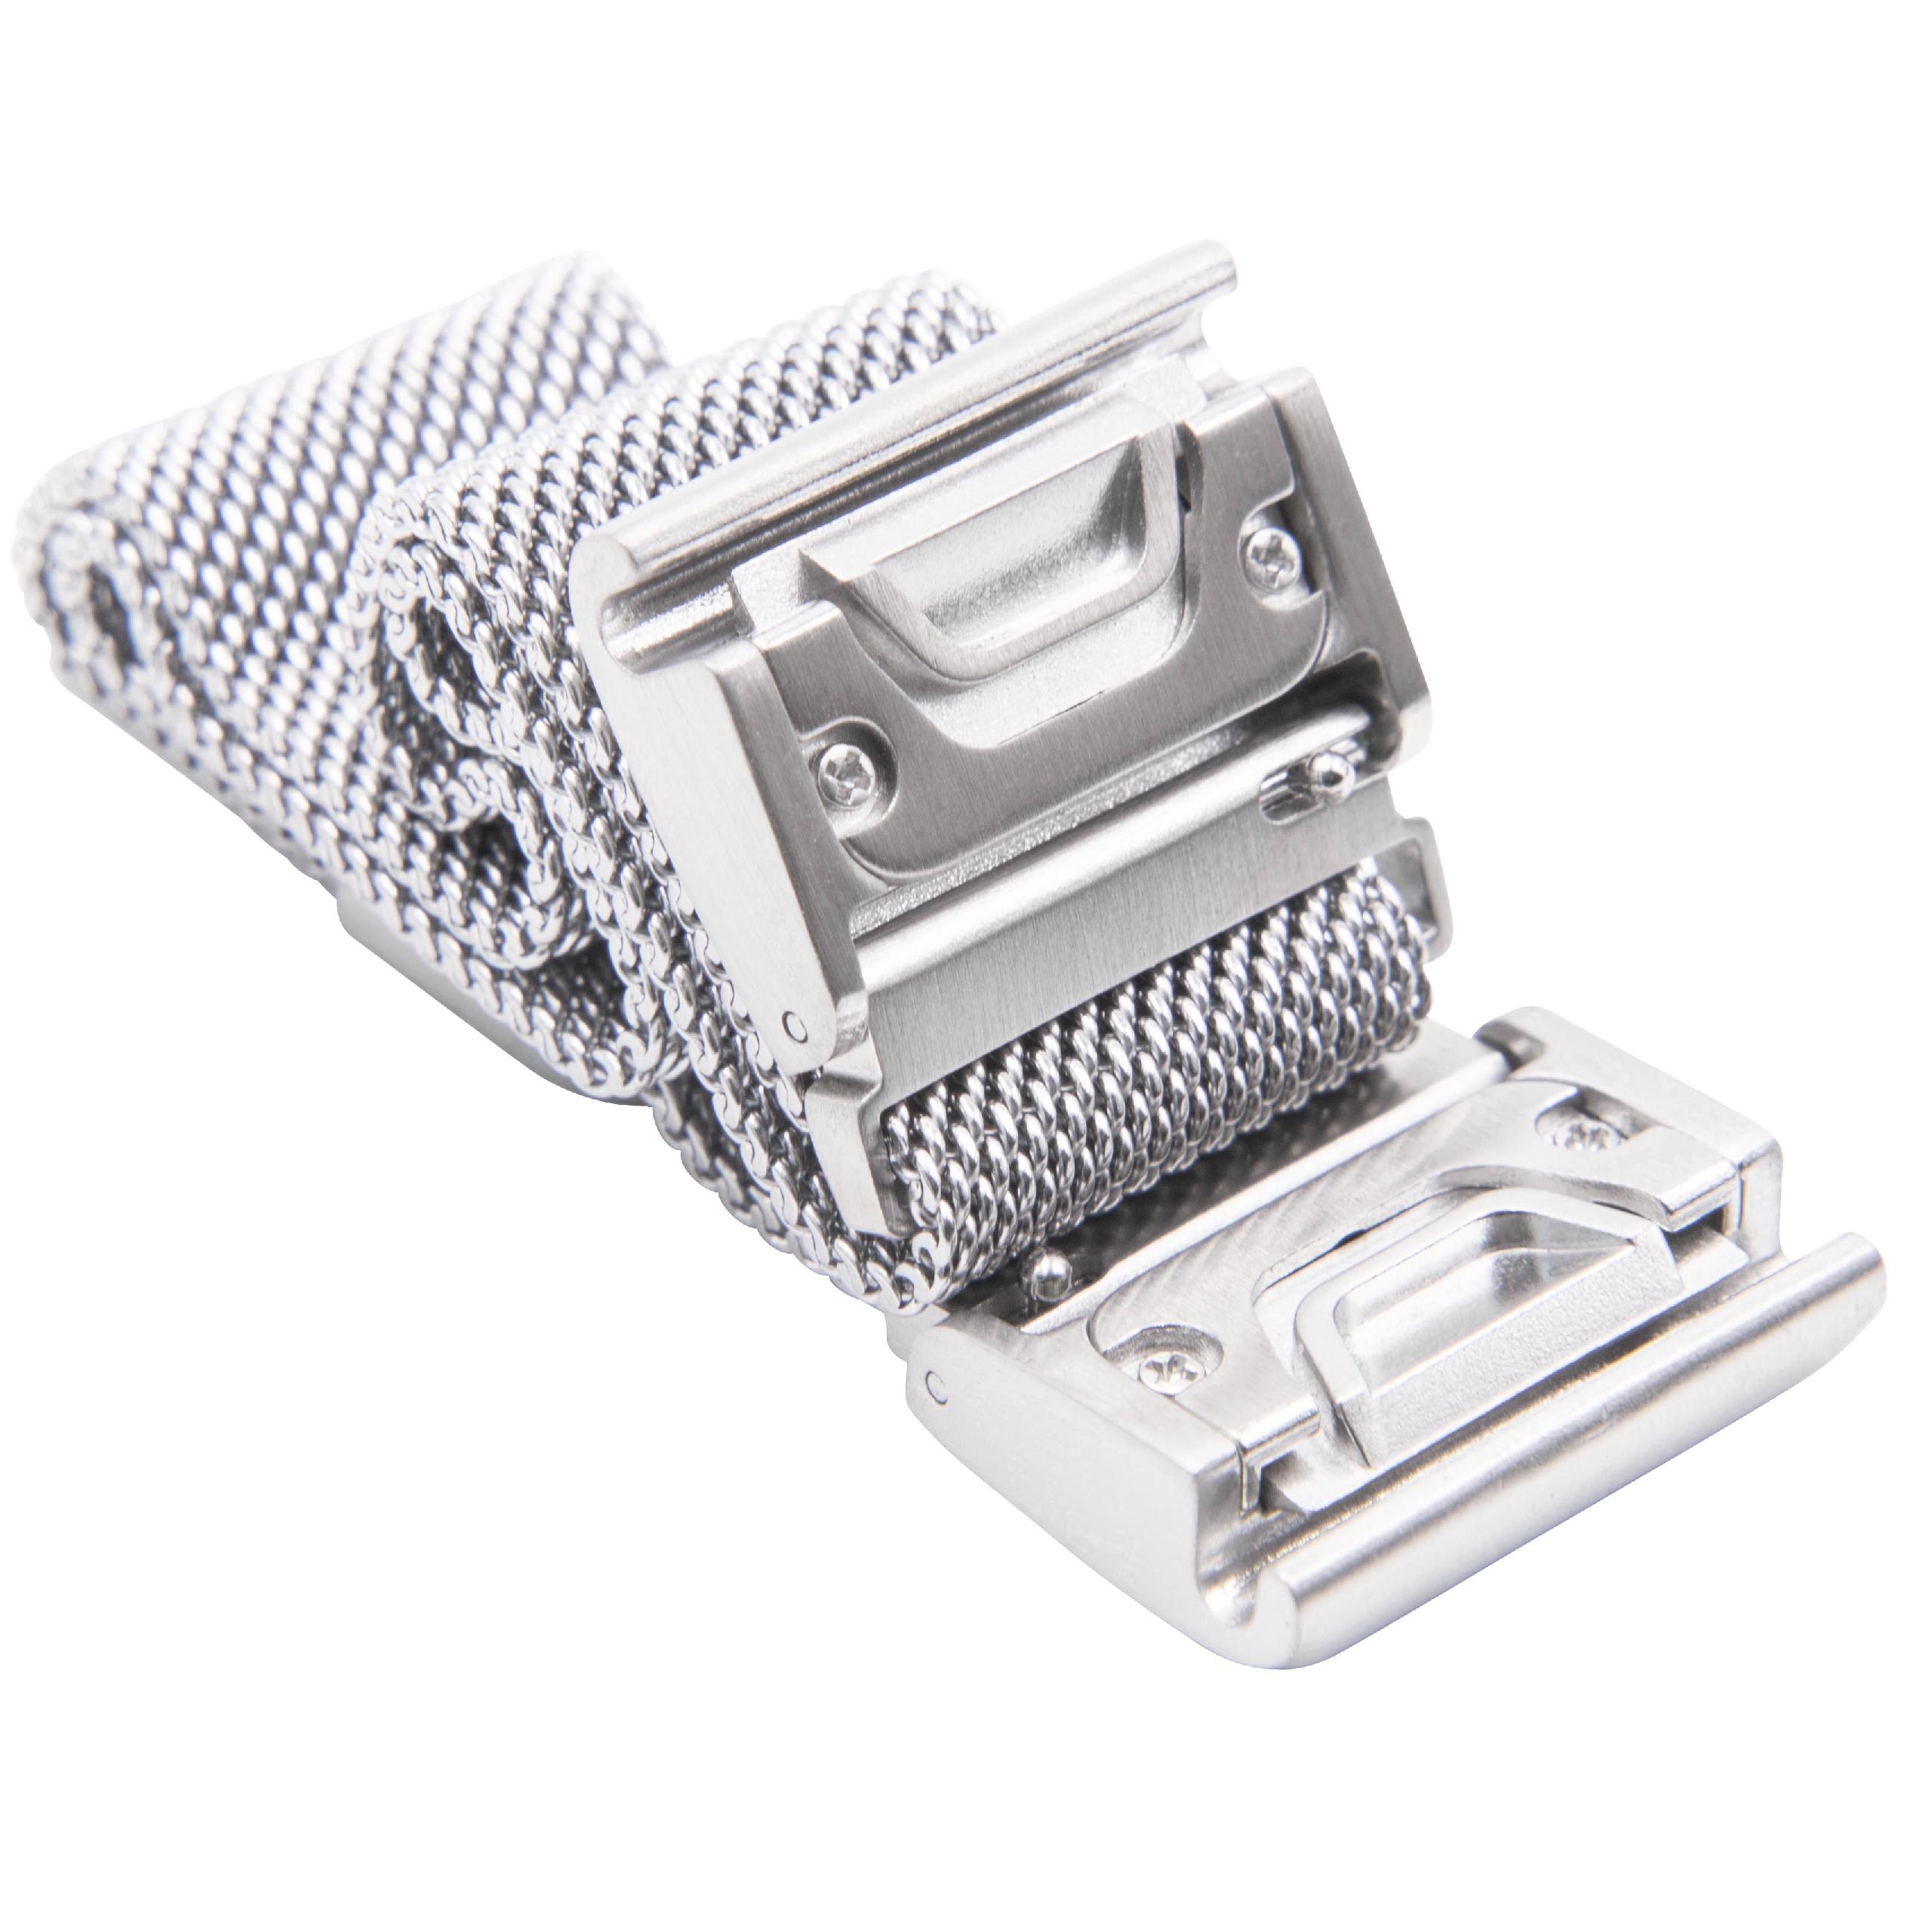 cinturino per Garmin Quatix Smartwatch ecc - fino a 248 mm circonferenza del polso, acciaio inox, argento